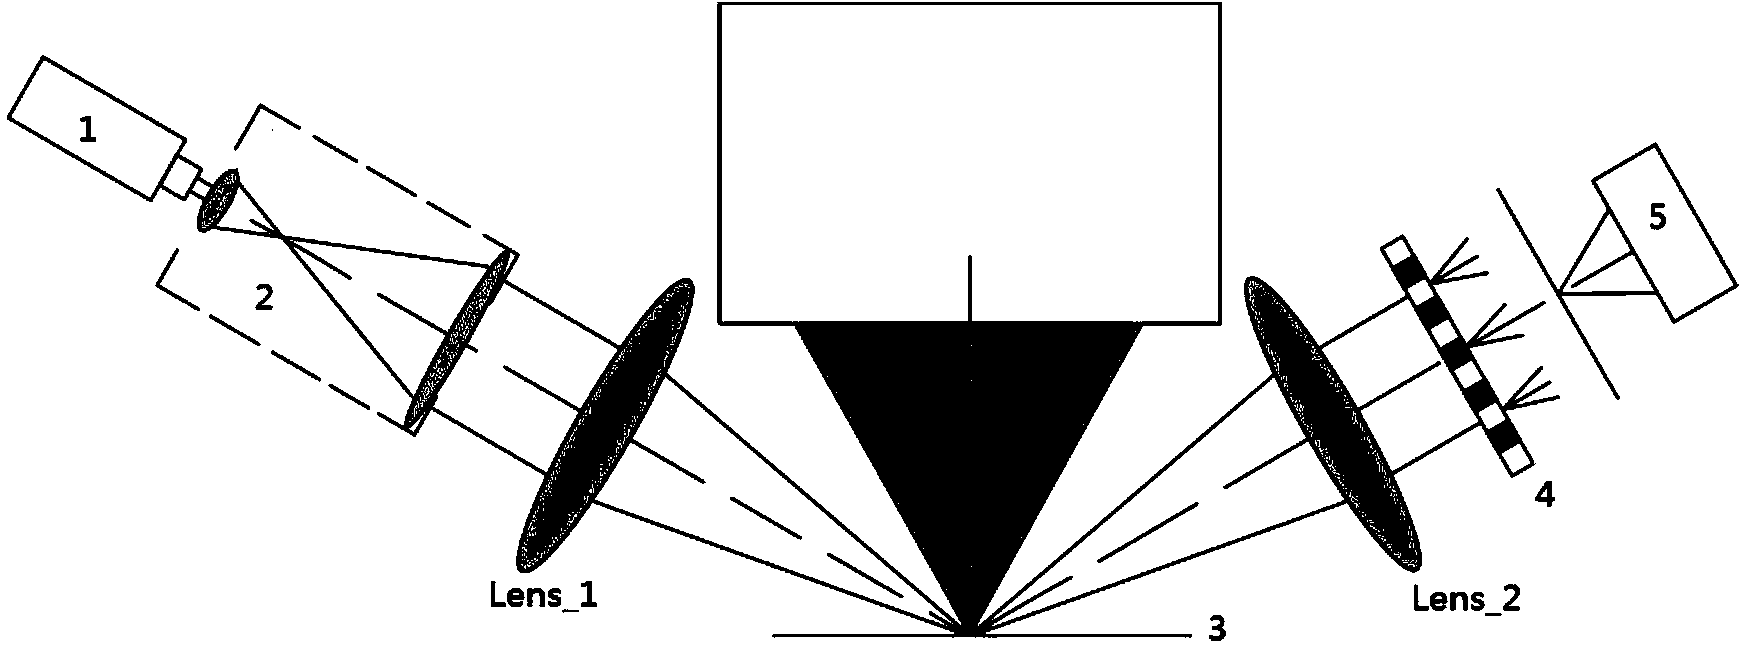 Focus detection method based on grating Talbot effect